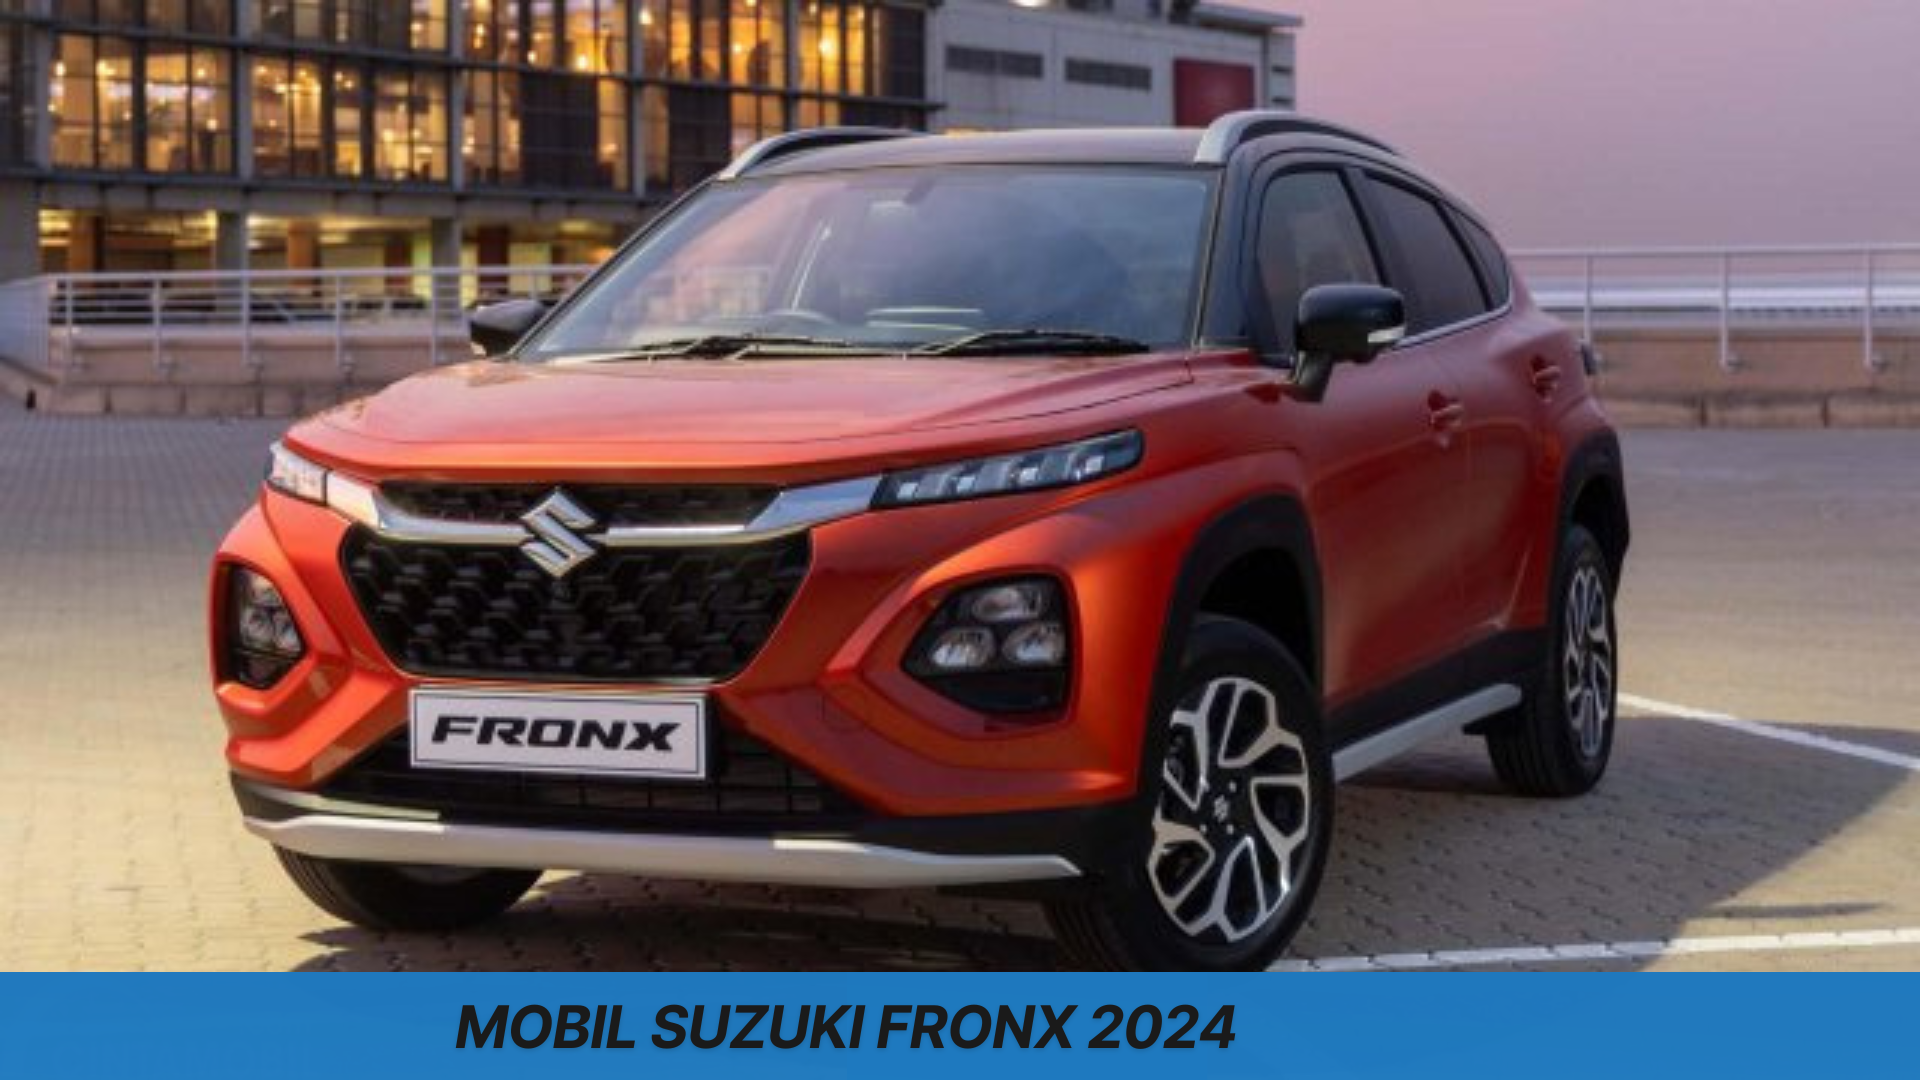 Mobil Suzuki Fronx 2024, Gebrak Pasar Small SUV dengan Harga Mulai Rp 100 Jutaan Saja